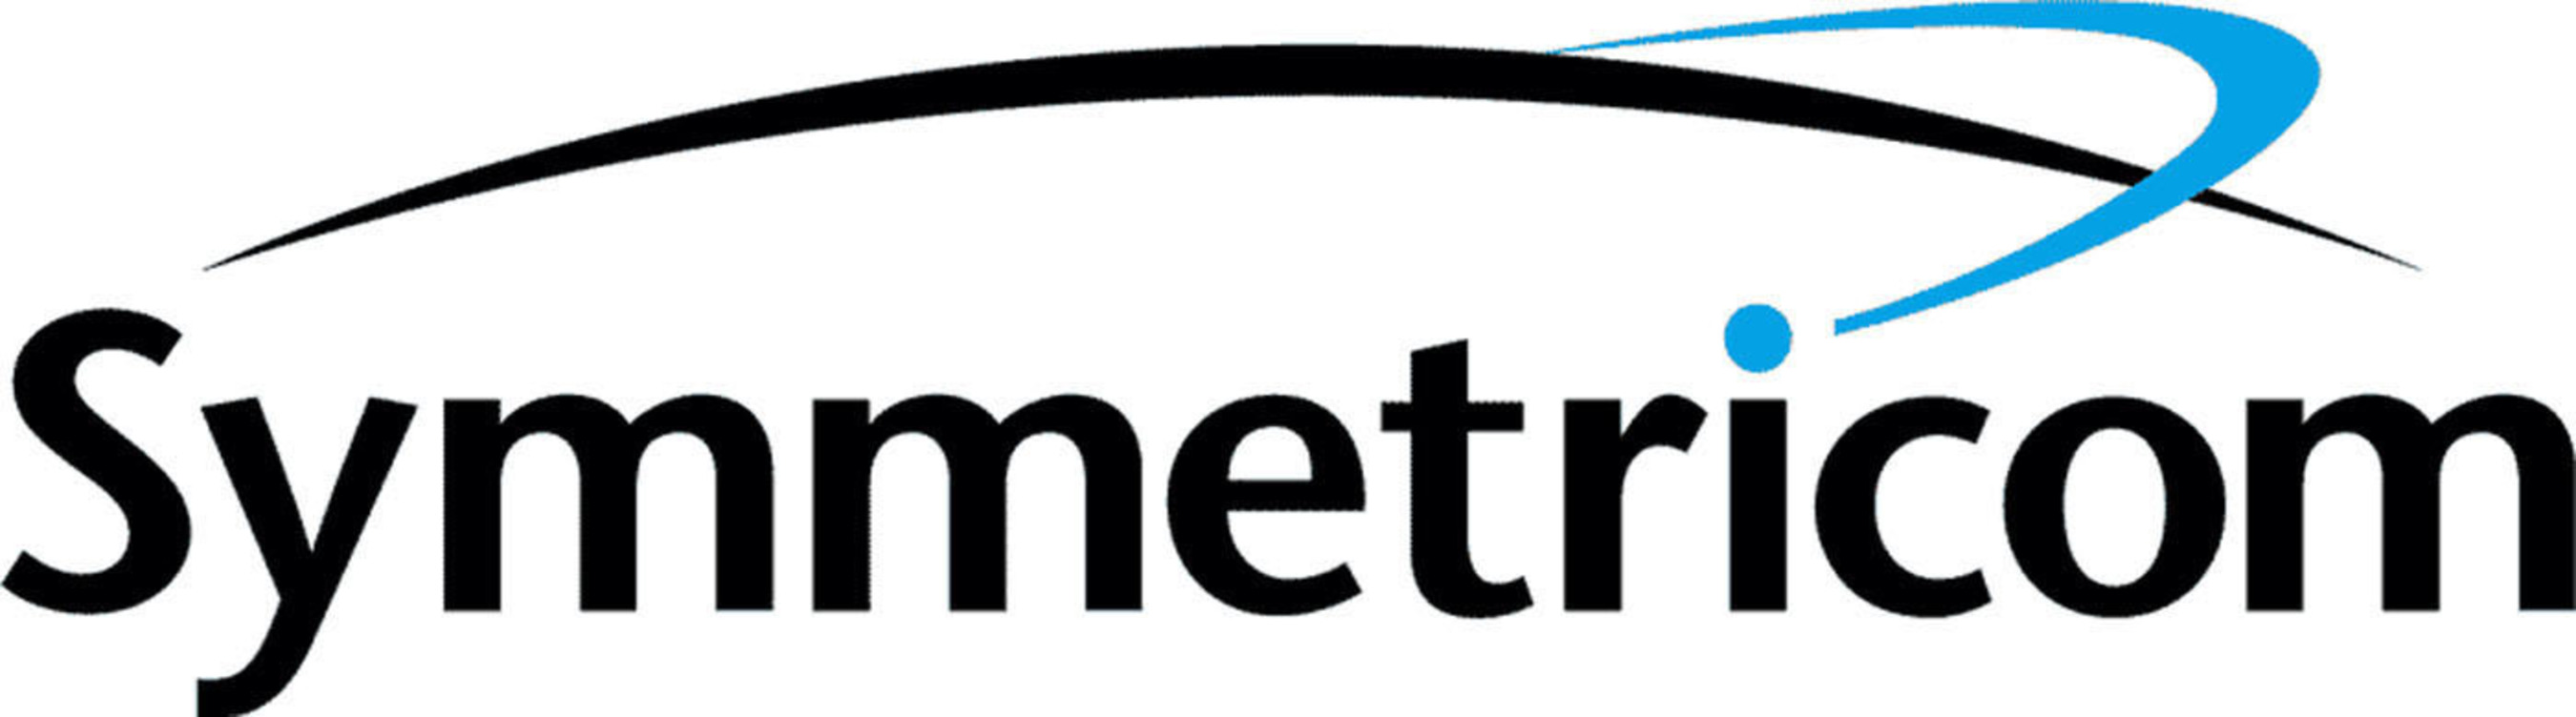 Symmetricom, Inc. logo. (PRNewsFoto/Symmetricom, Inc.) (PRNewsFoto/)